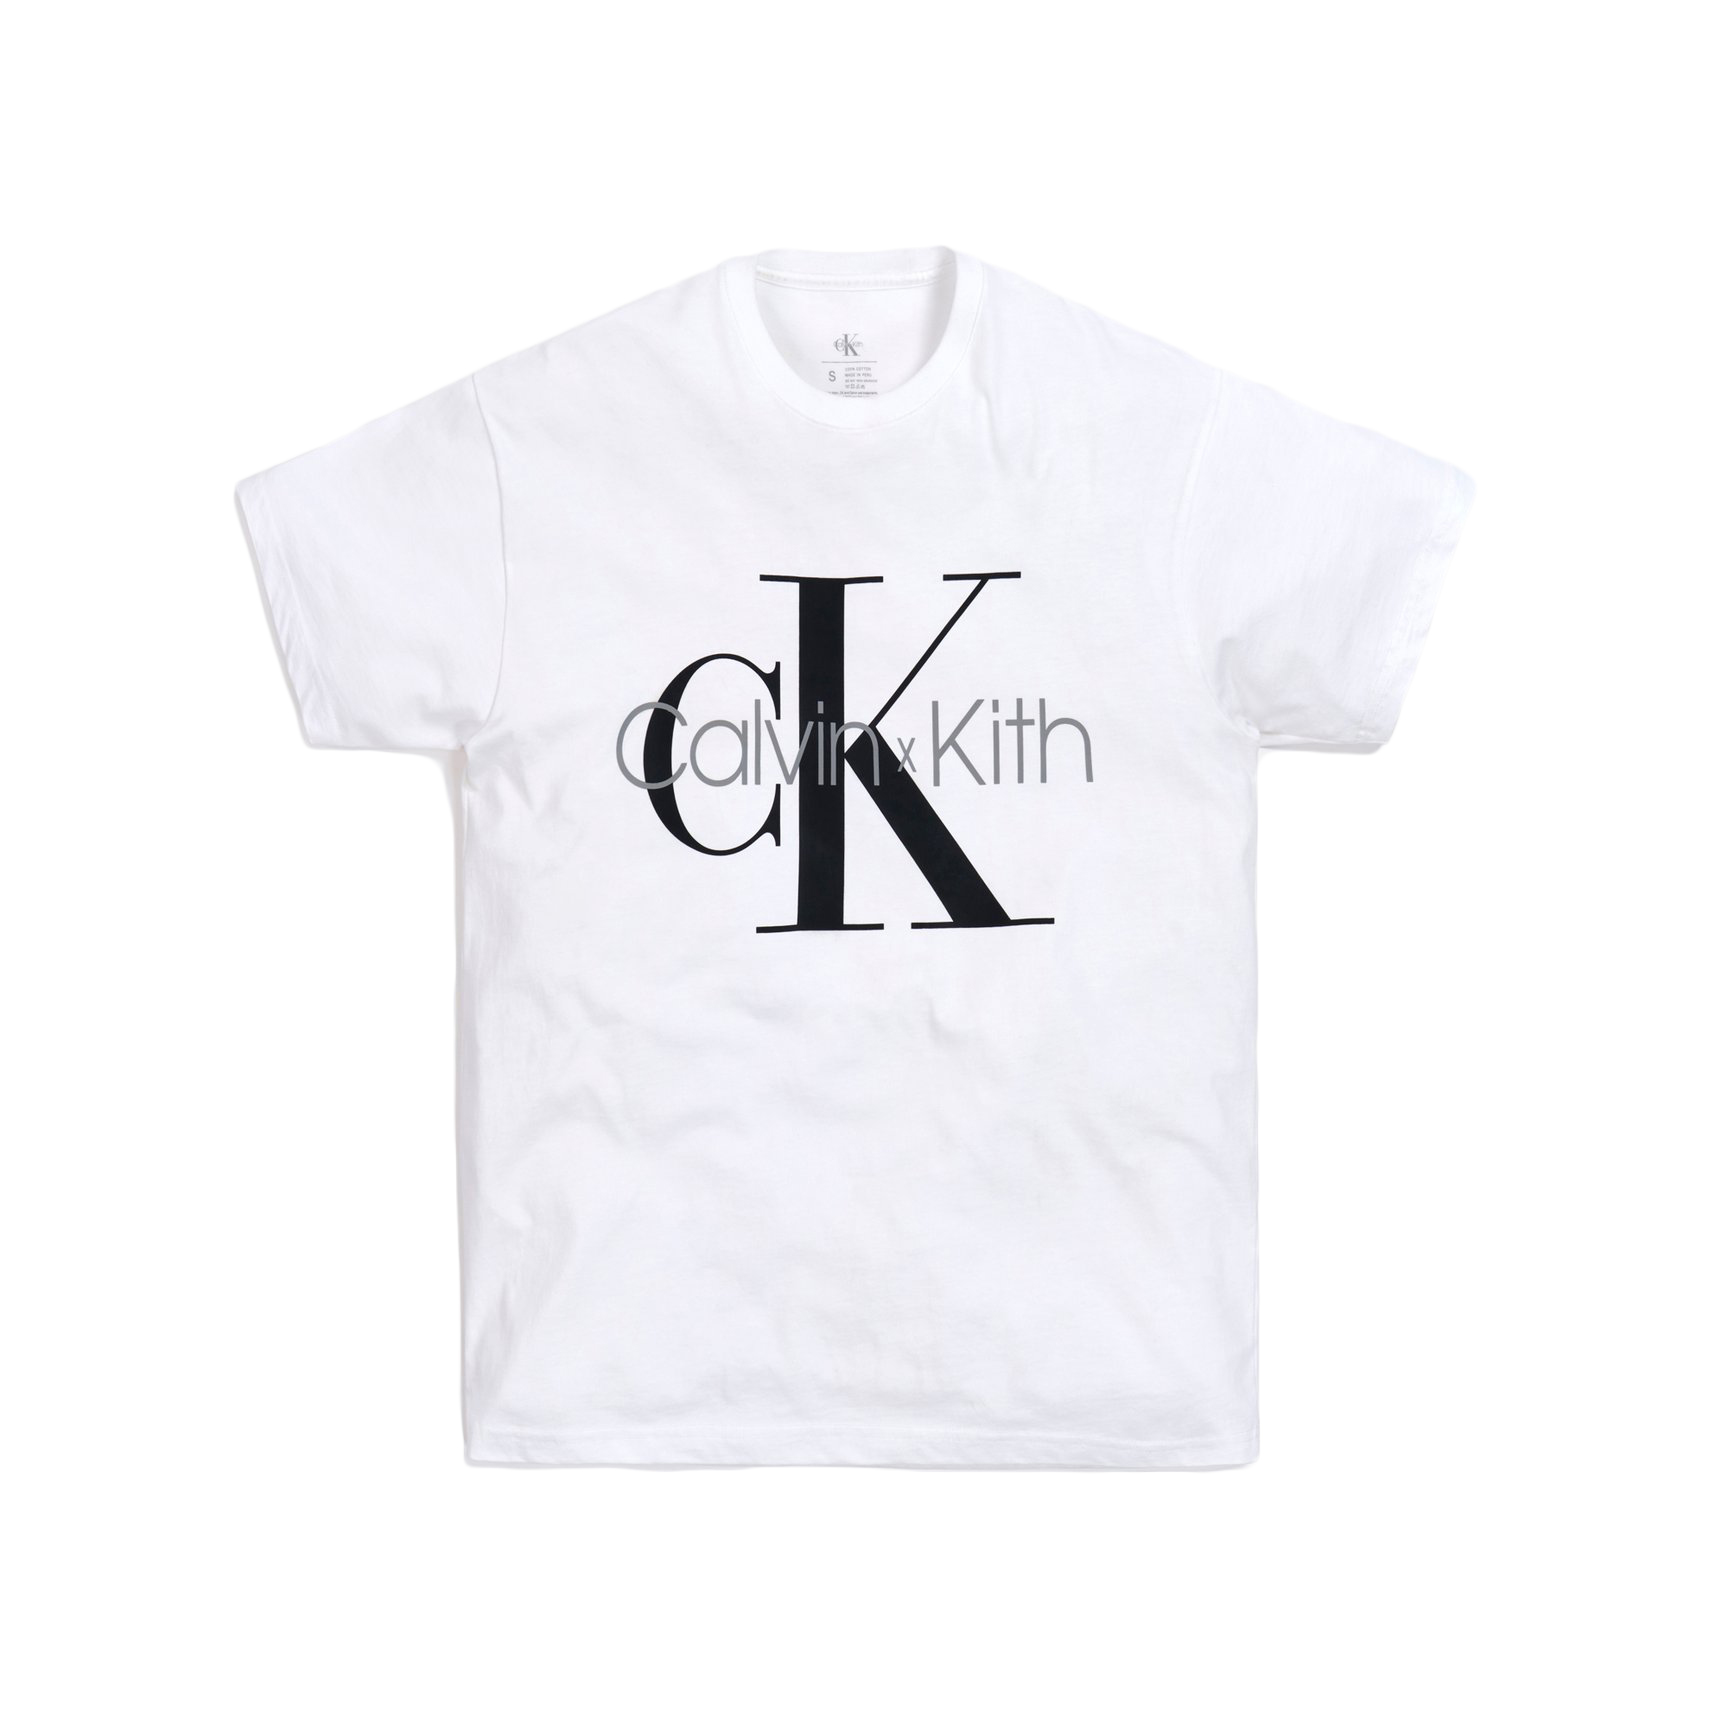 Kith for Calvin Klein Tee White Men's - FW20 - US